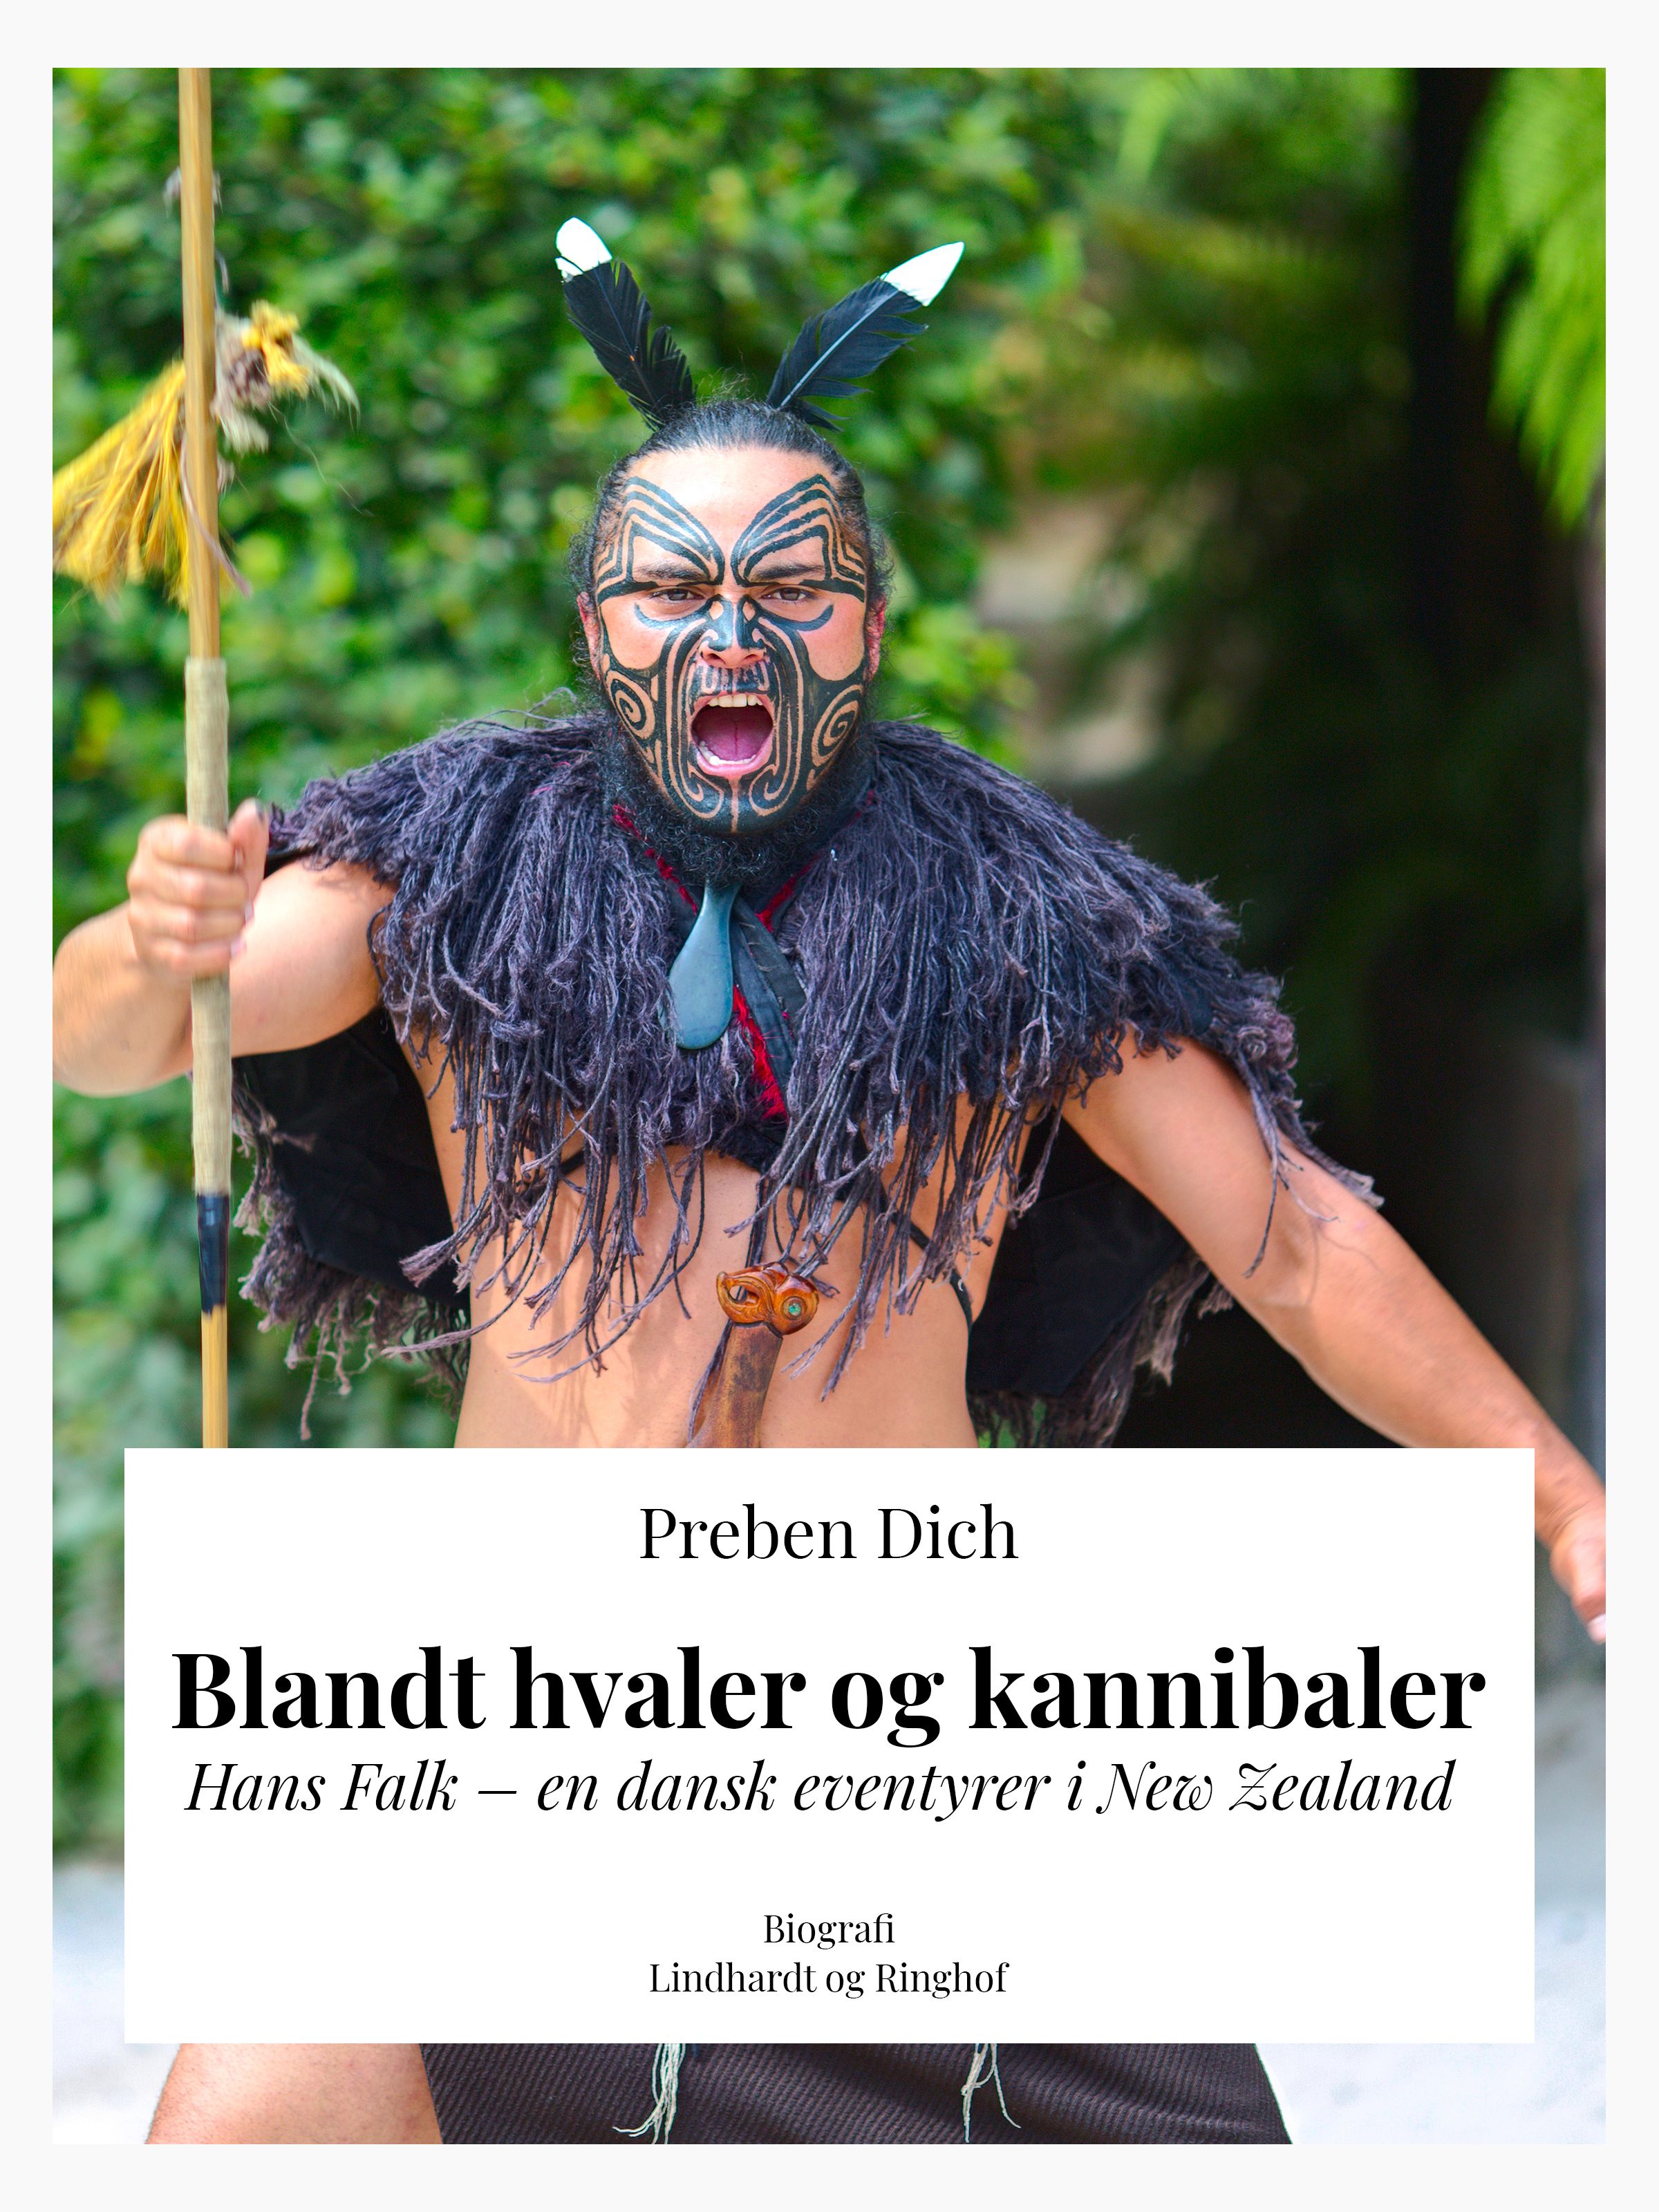 Blandt hvaler og kannibaler. Hans Falk – en dansk eventyrer i New Zealand, eBook by Preben Helsted Dich